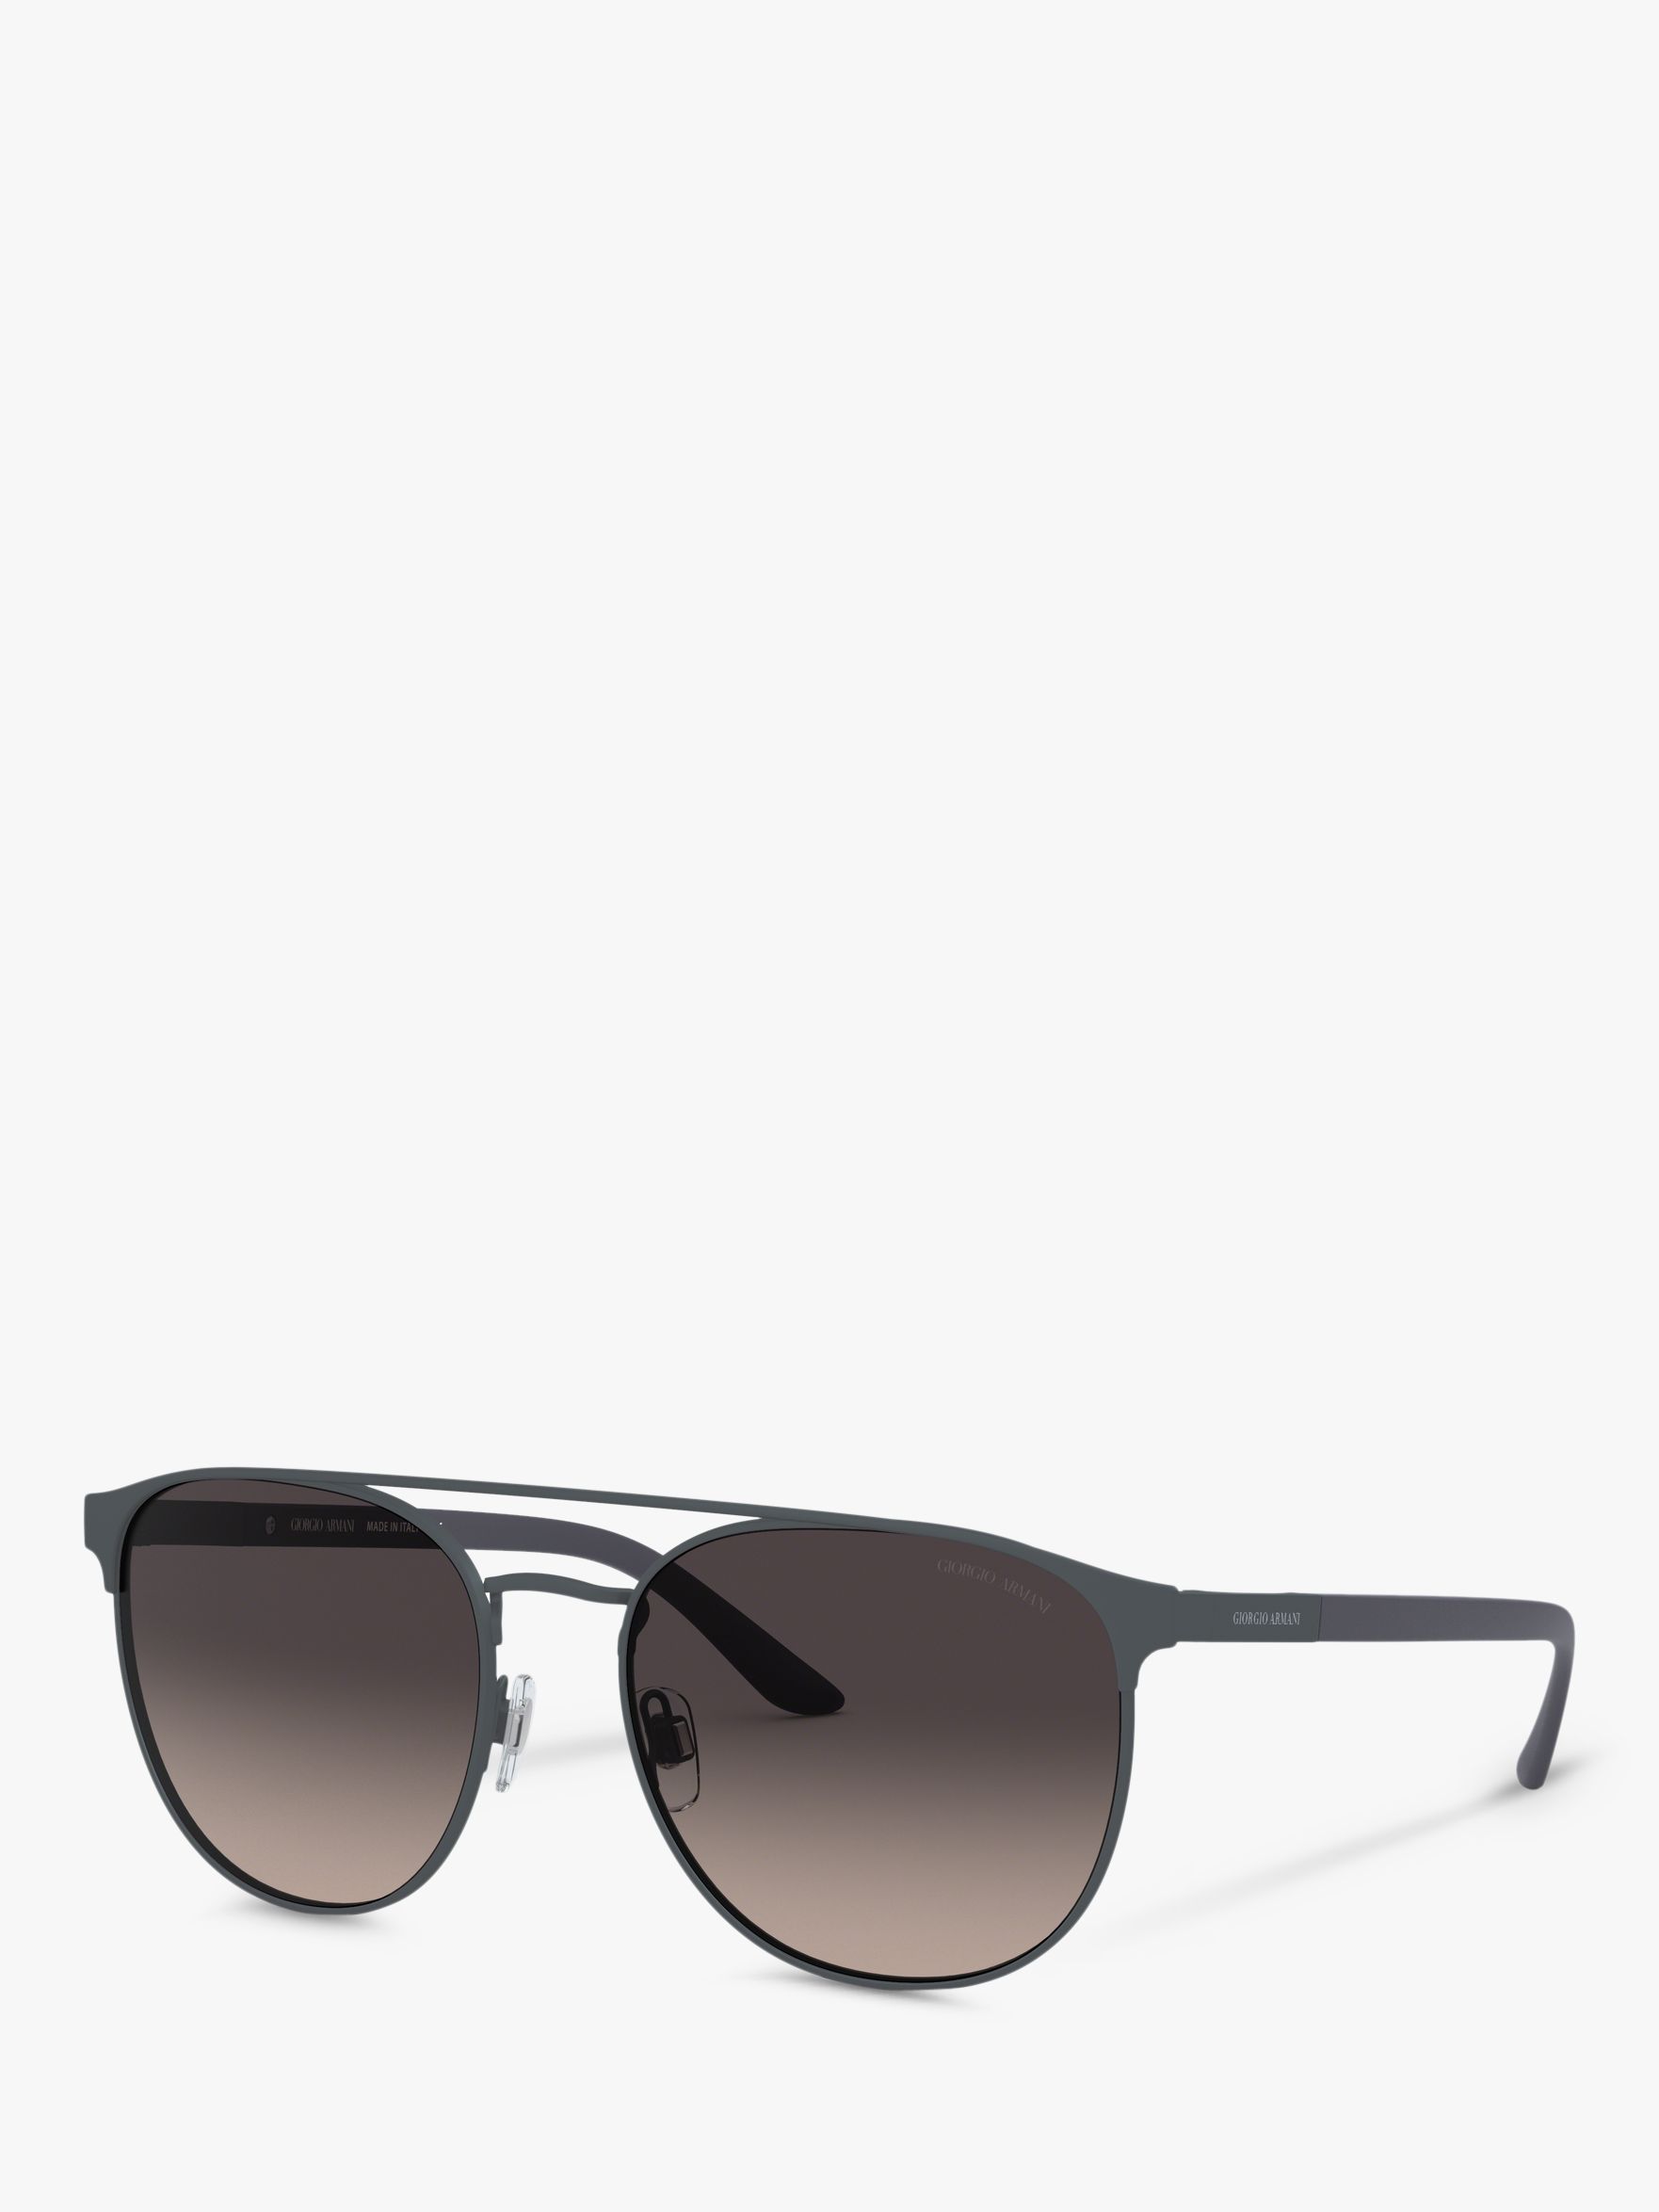 Giorgio Armani AR6083 Men's Square Sunglasses